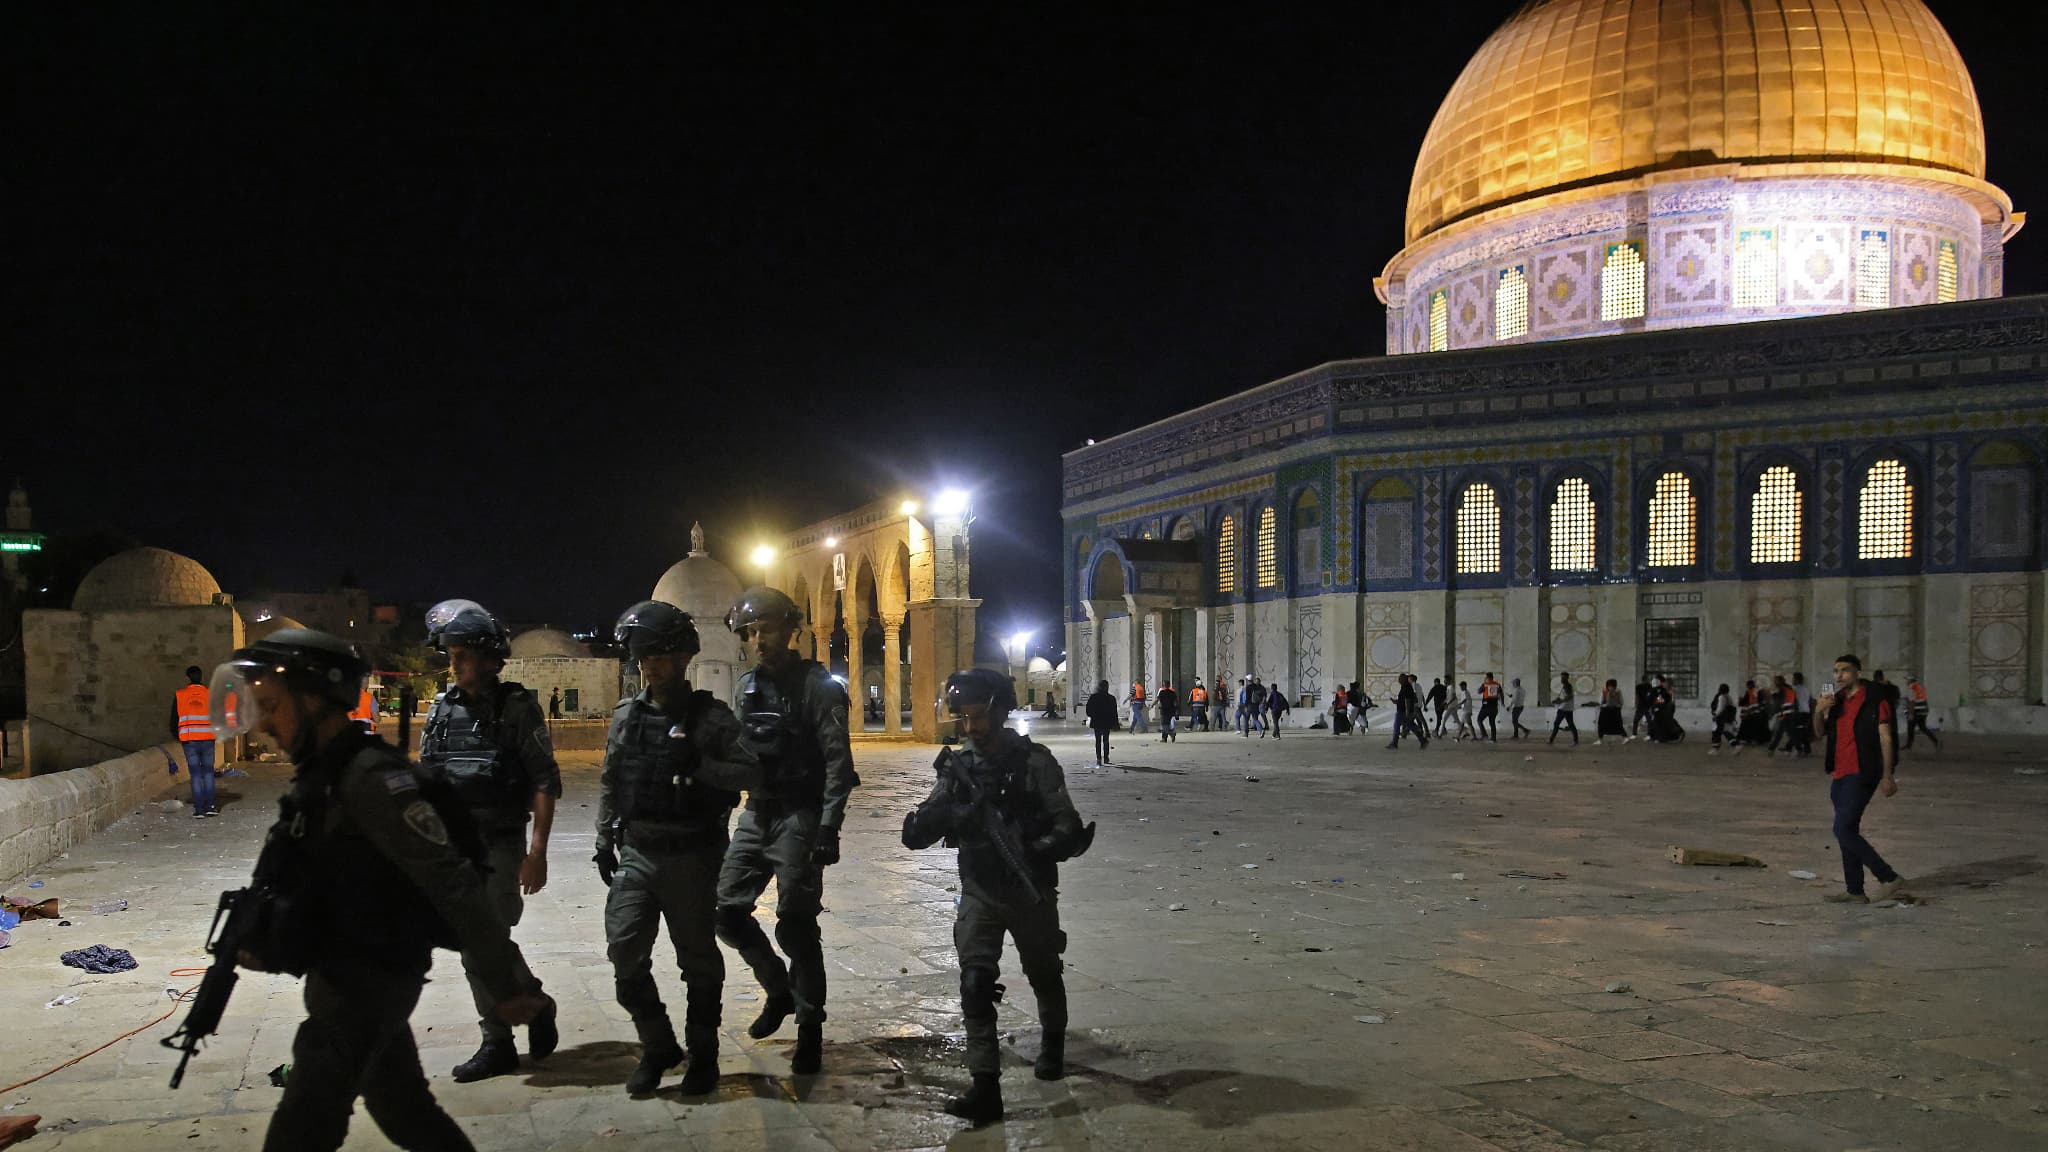 Jérusalem: des heurts signalés entre manifestants palestiniens et policiers israéliens sur l'Esplanade des Mosquées